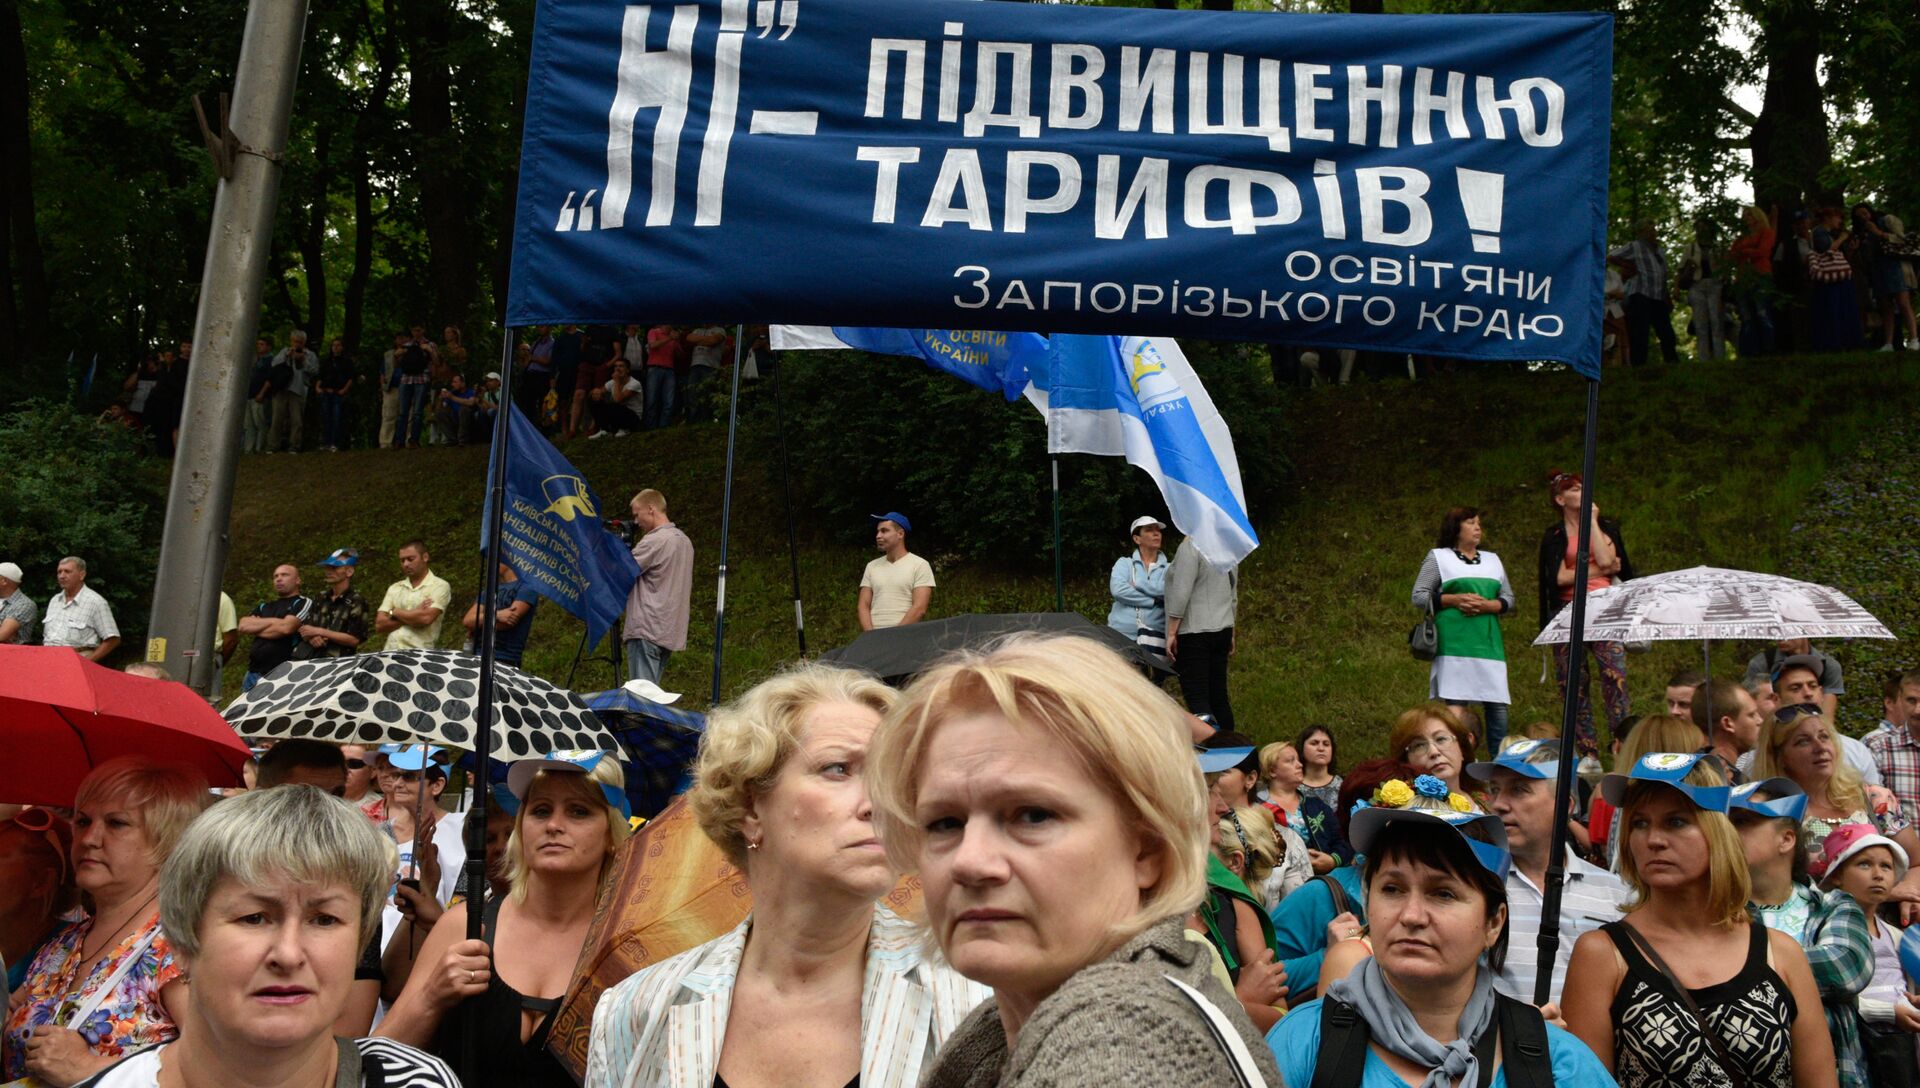 Участники всеукраинского марша протеста Европейским ценам - европейскую зарплату против повышения цен на газ и роста коммунальных тарифов - РИА Новости, 1920, 18.10.2016